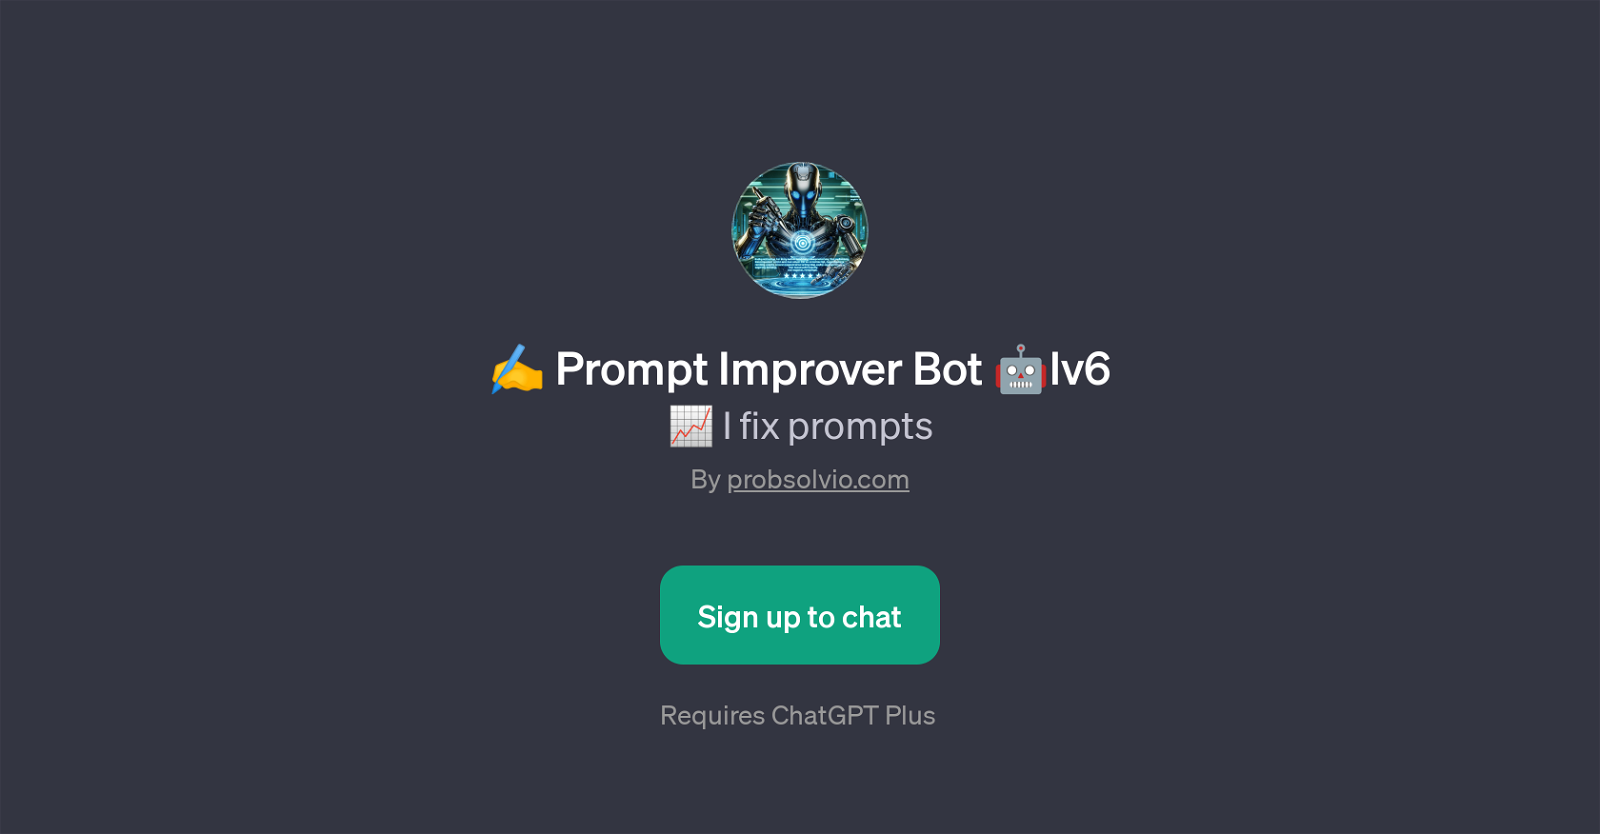 Prompt Improver Bot Lv6 website